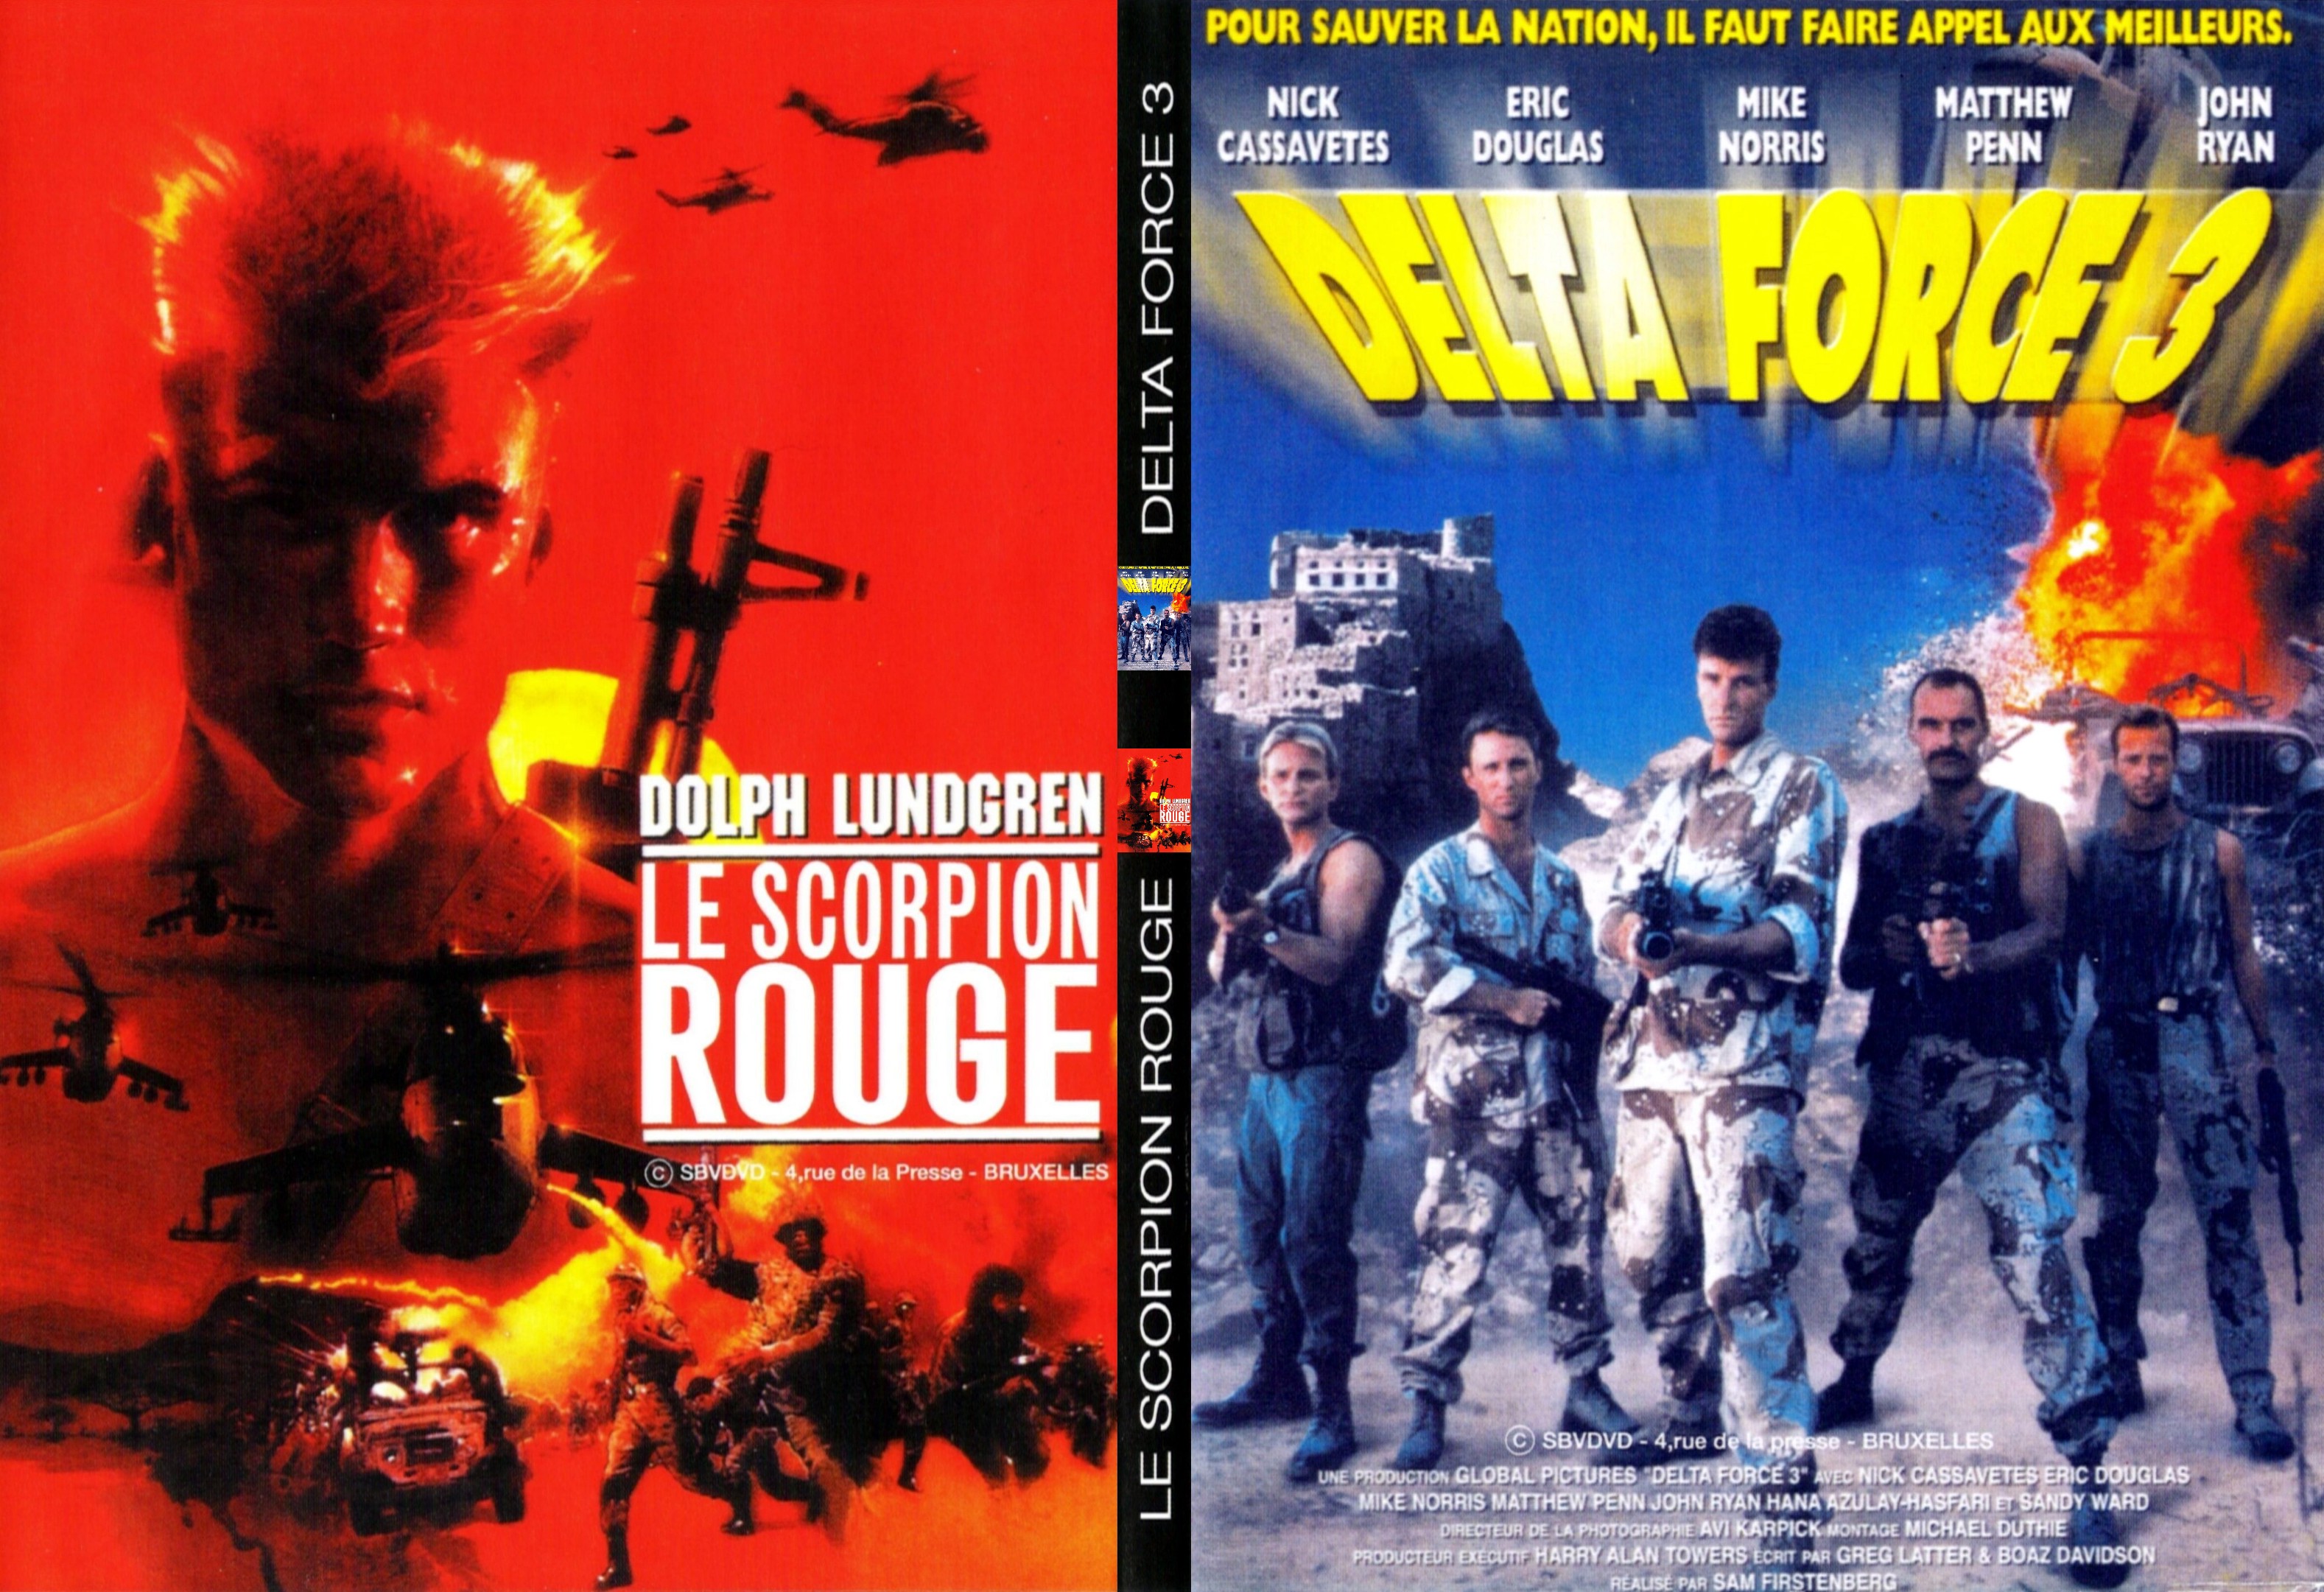 Jaquette DVD Delta force 3 + Le scorpion rouge - SLIM